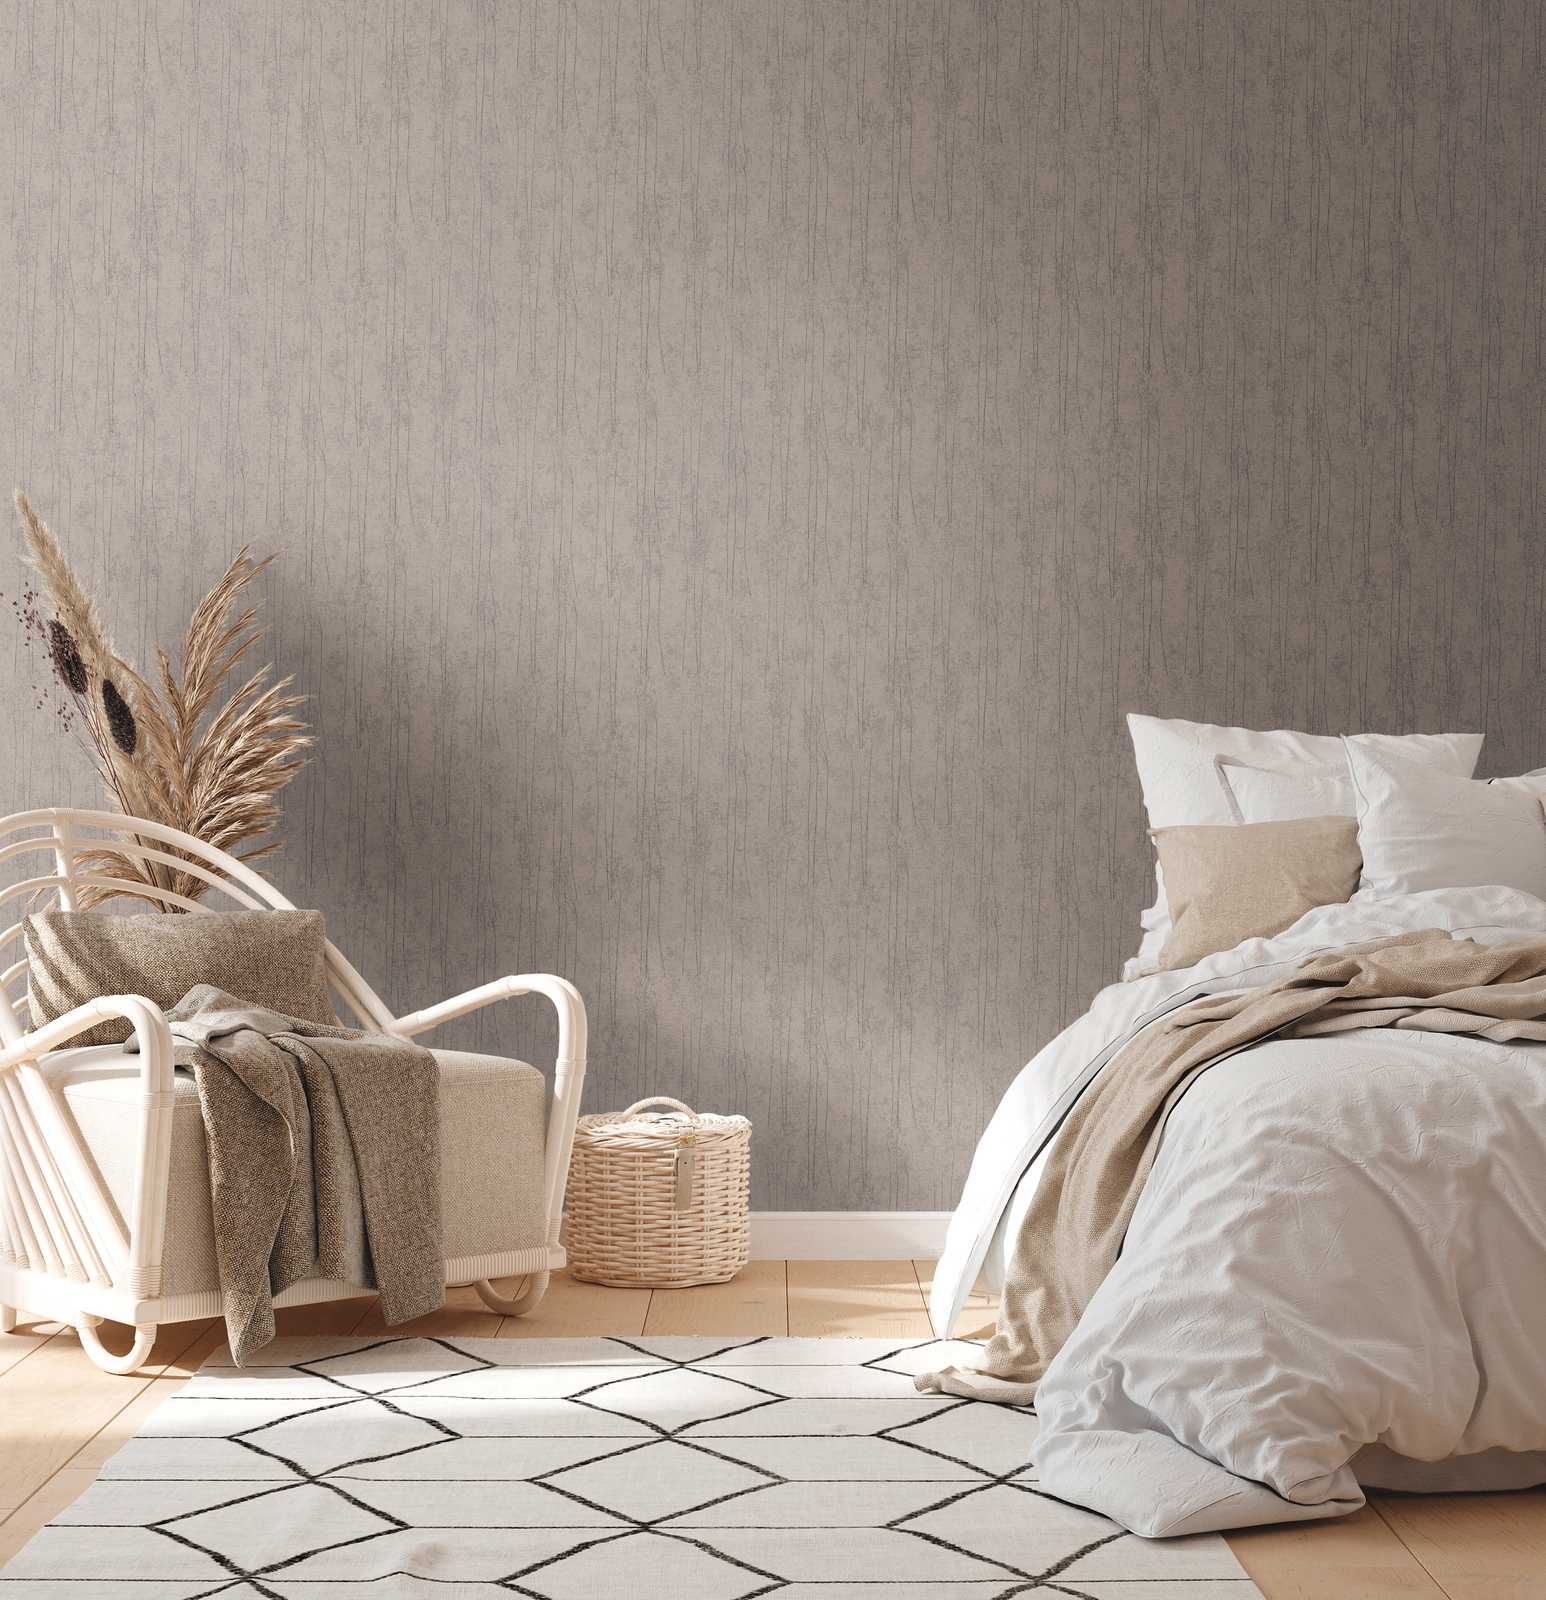             Papel pintado gris no tejido con diseño de naturaleza en estilo escandinavo
        